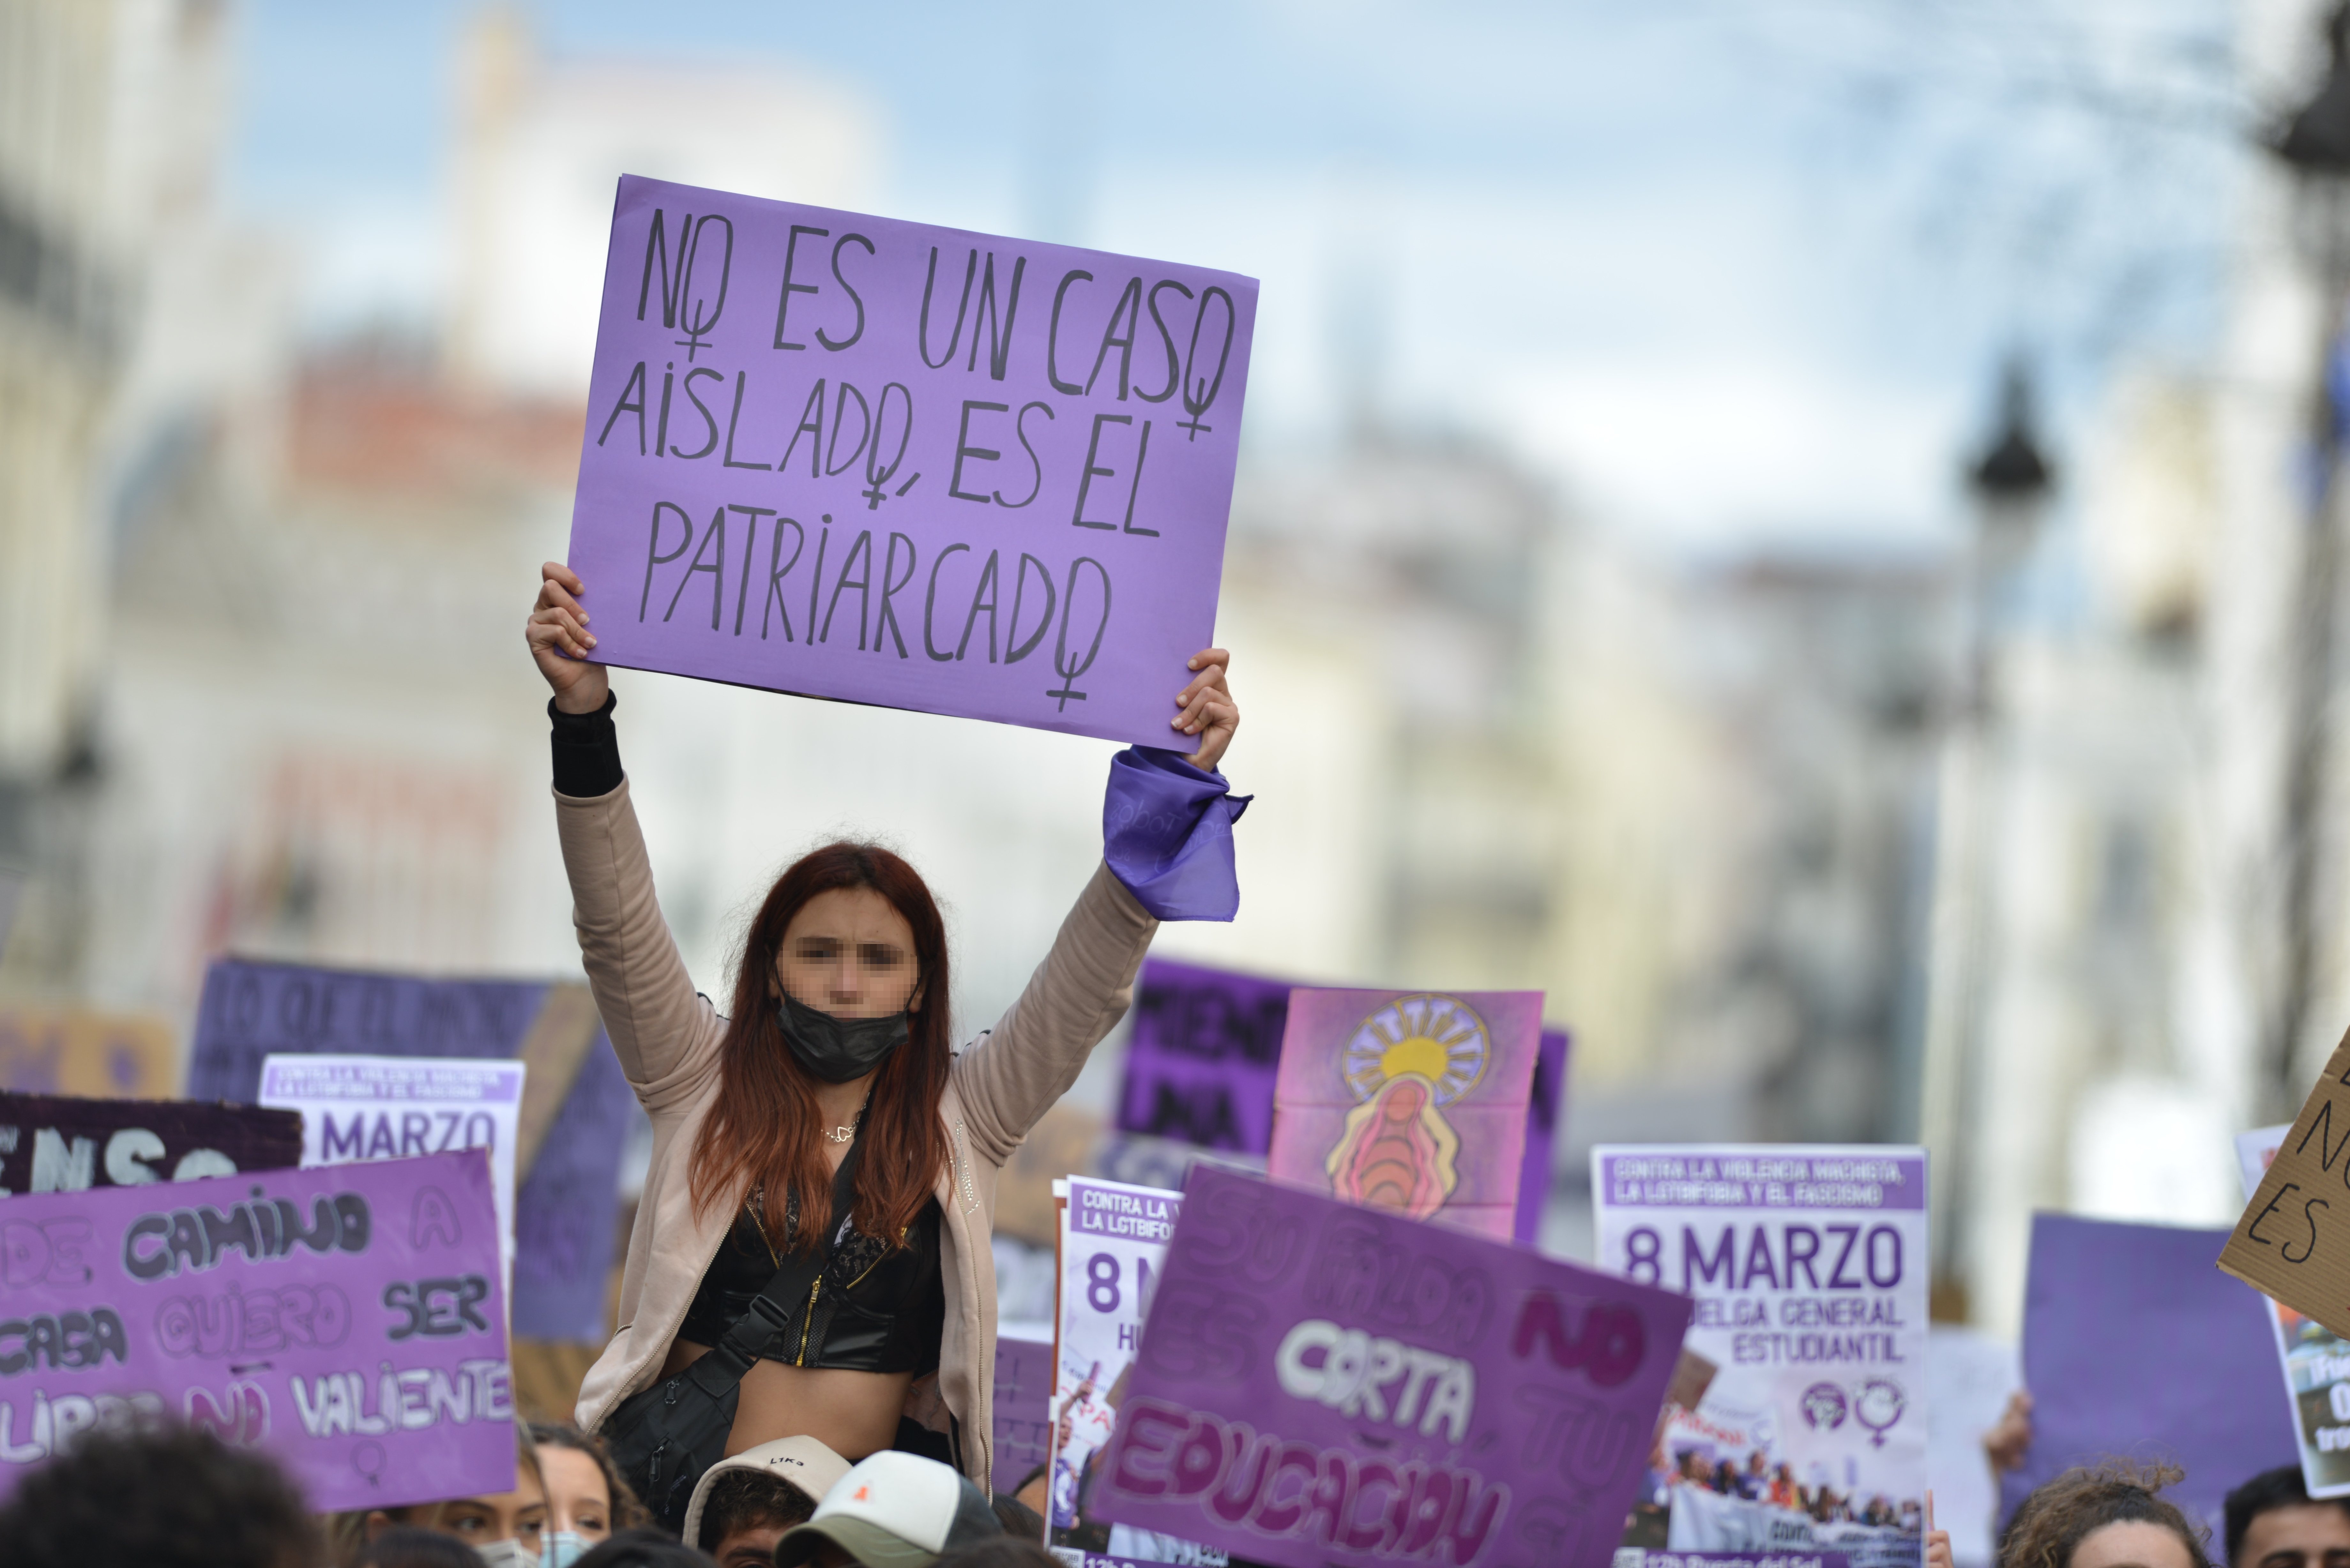 ¿Qué consideran los españoles acoso sexual?